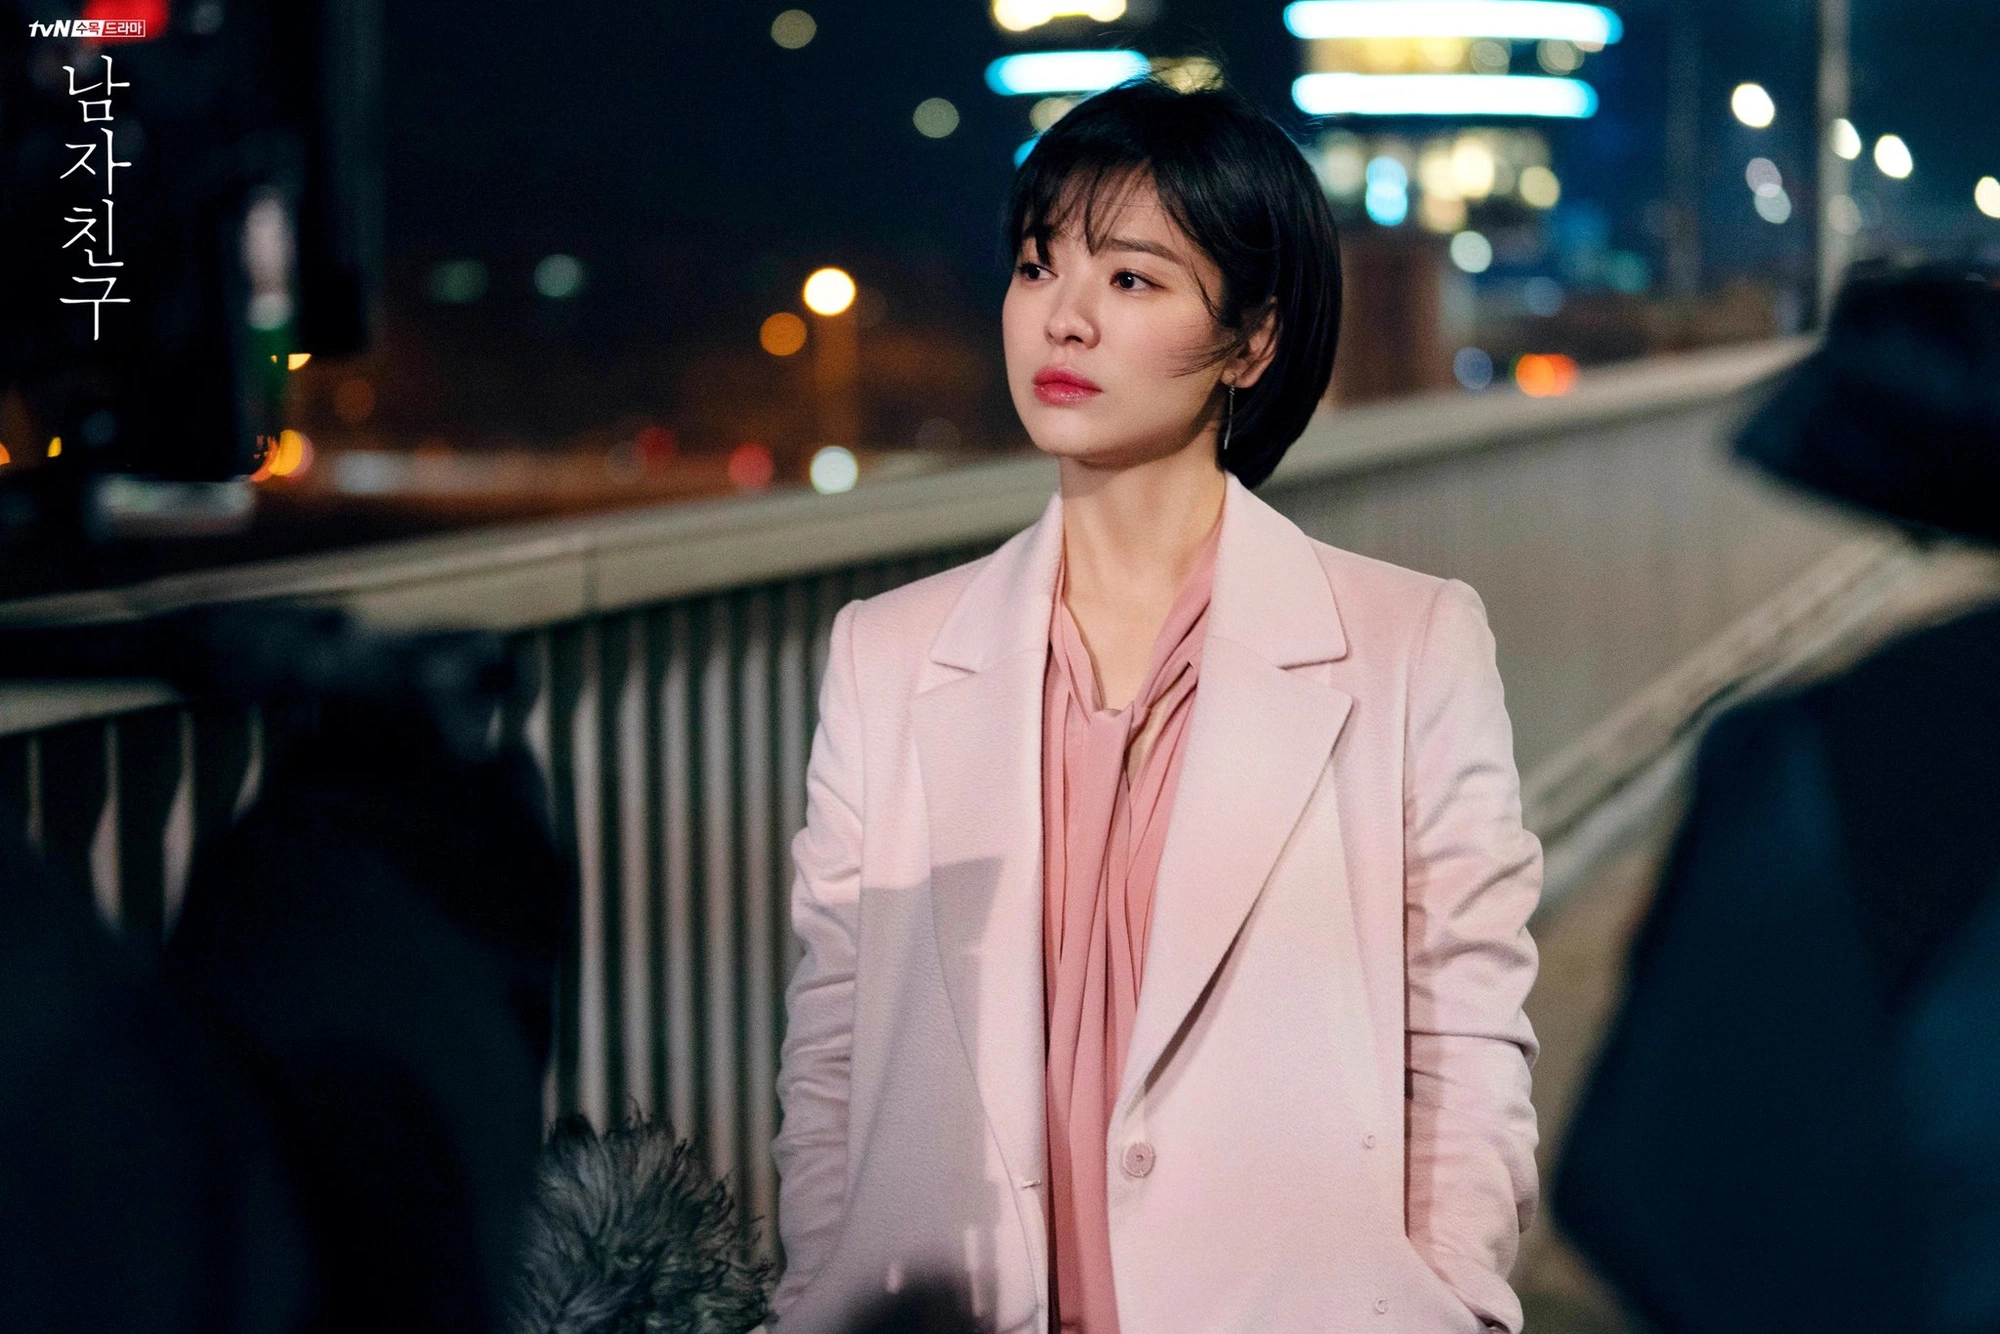 Diện sắc màu pastel ngọt ngào như Song Hye Kyo